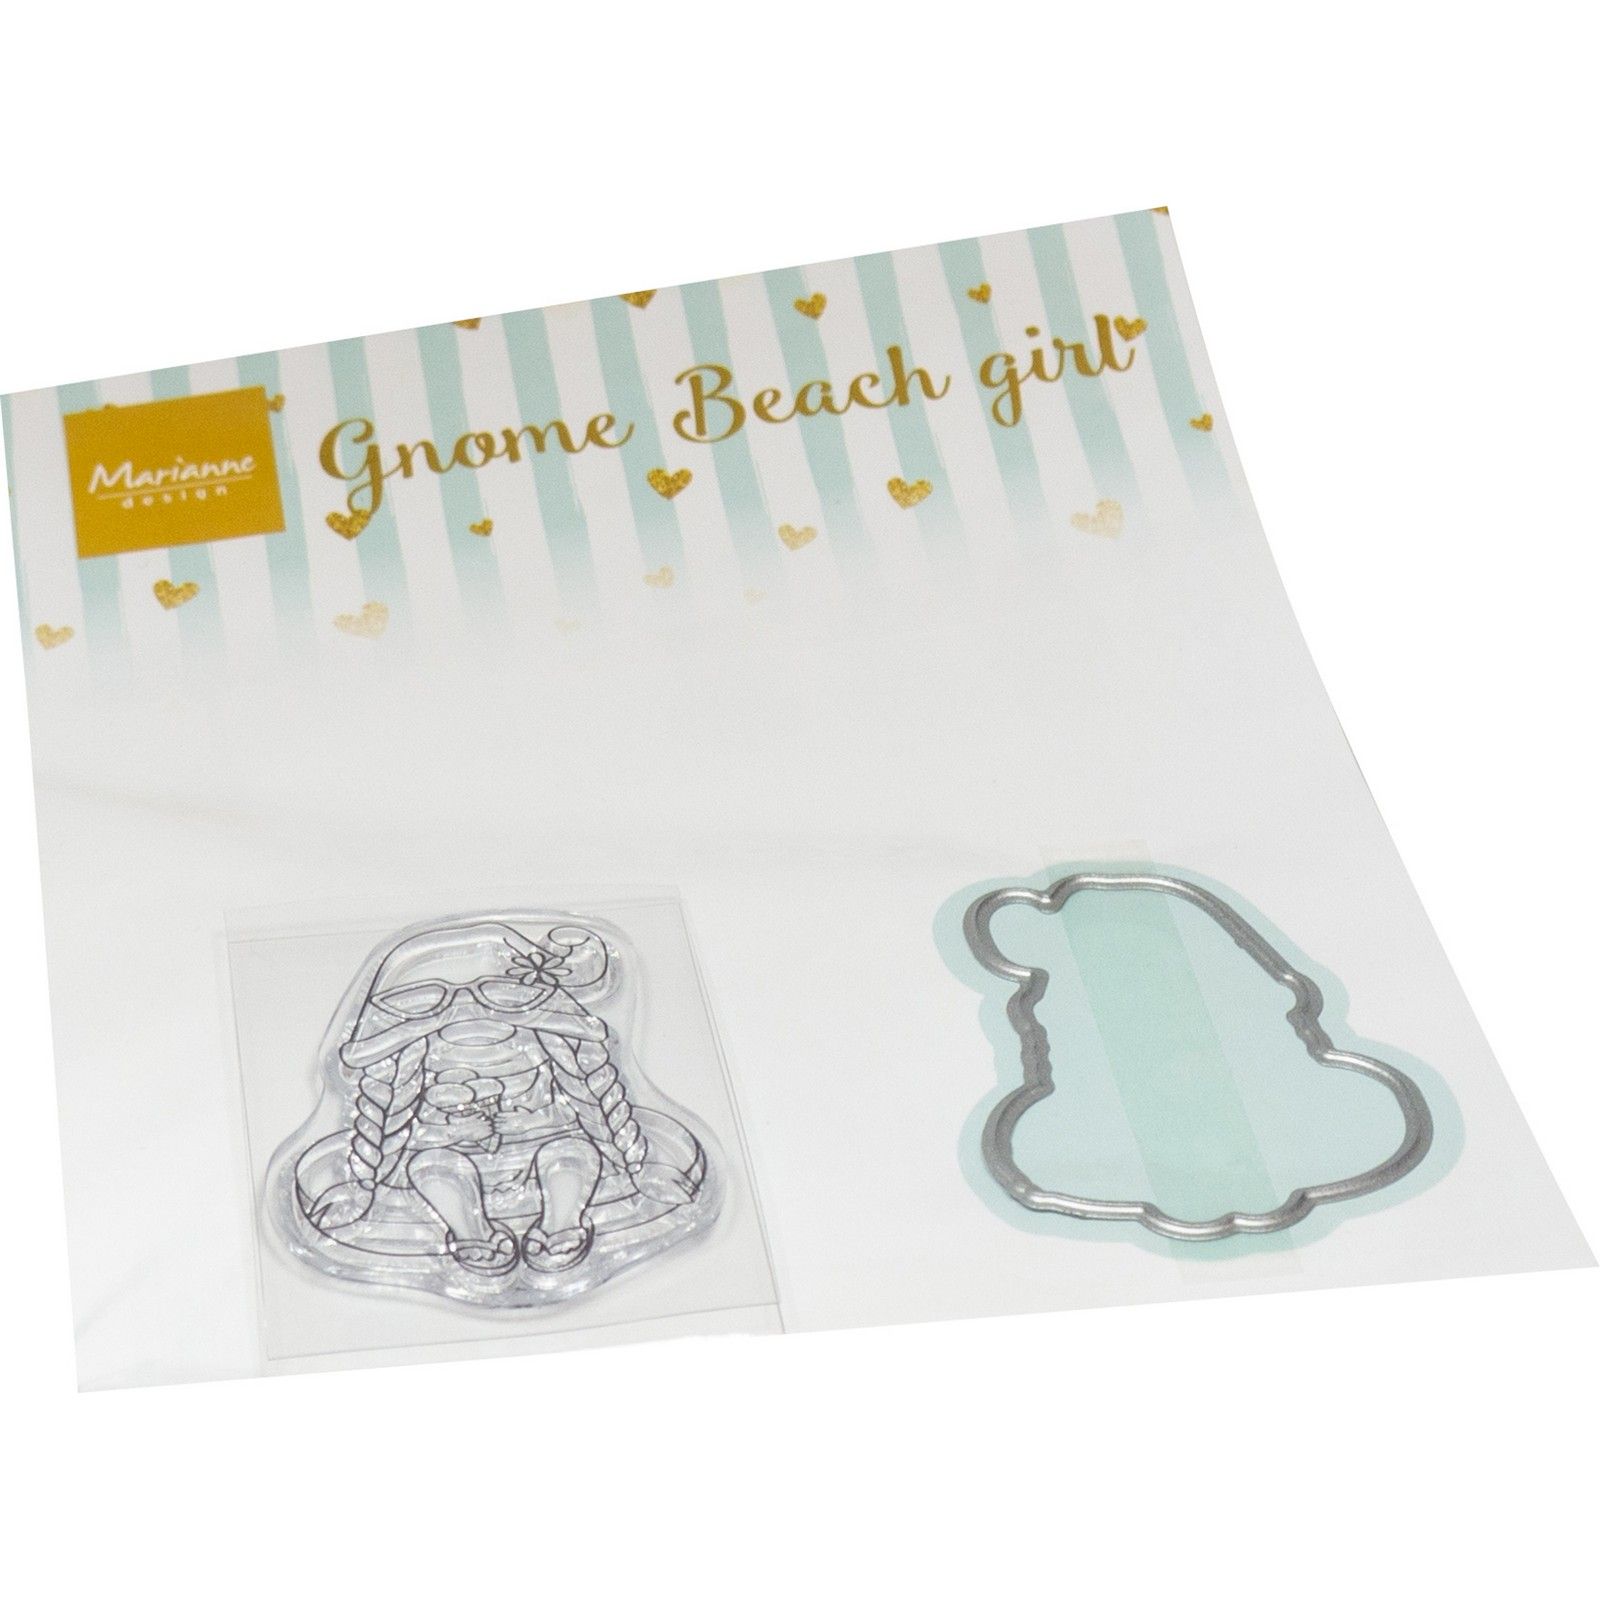 Marianne Design • Stamp & die set Gnomes Beach girl